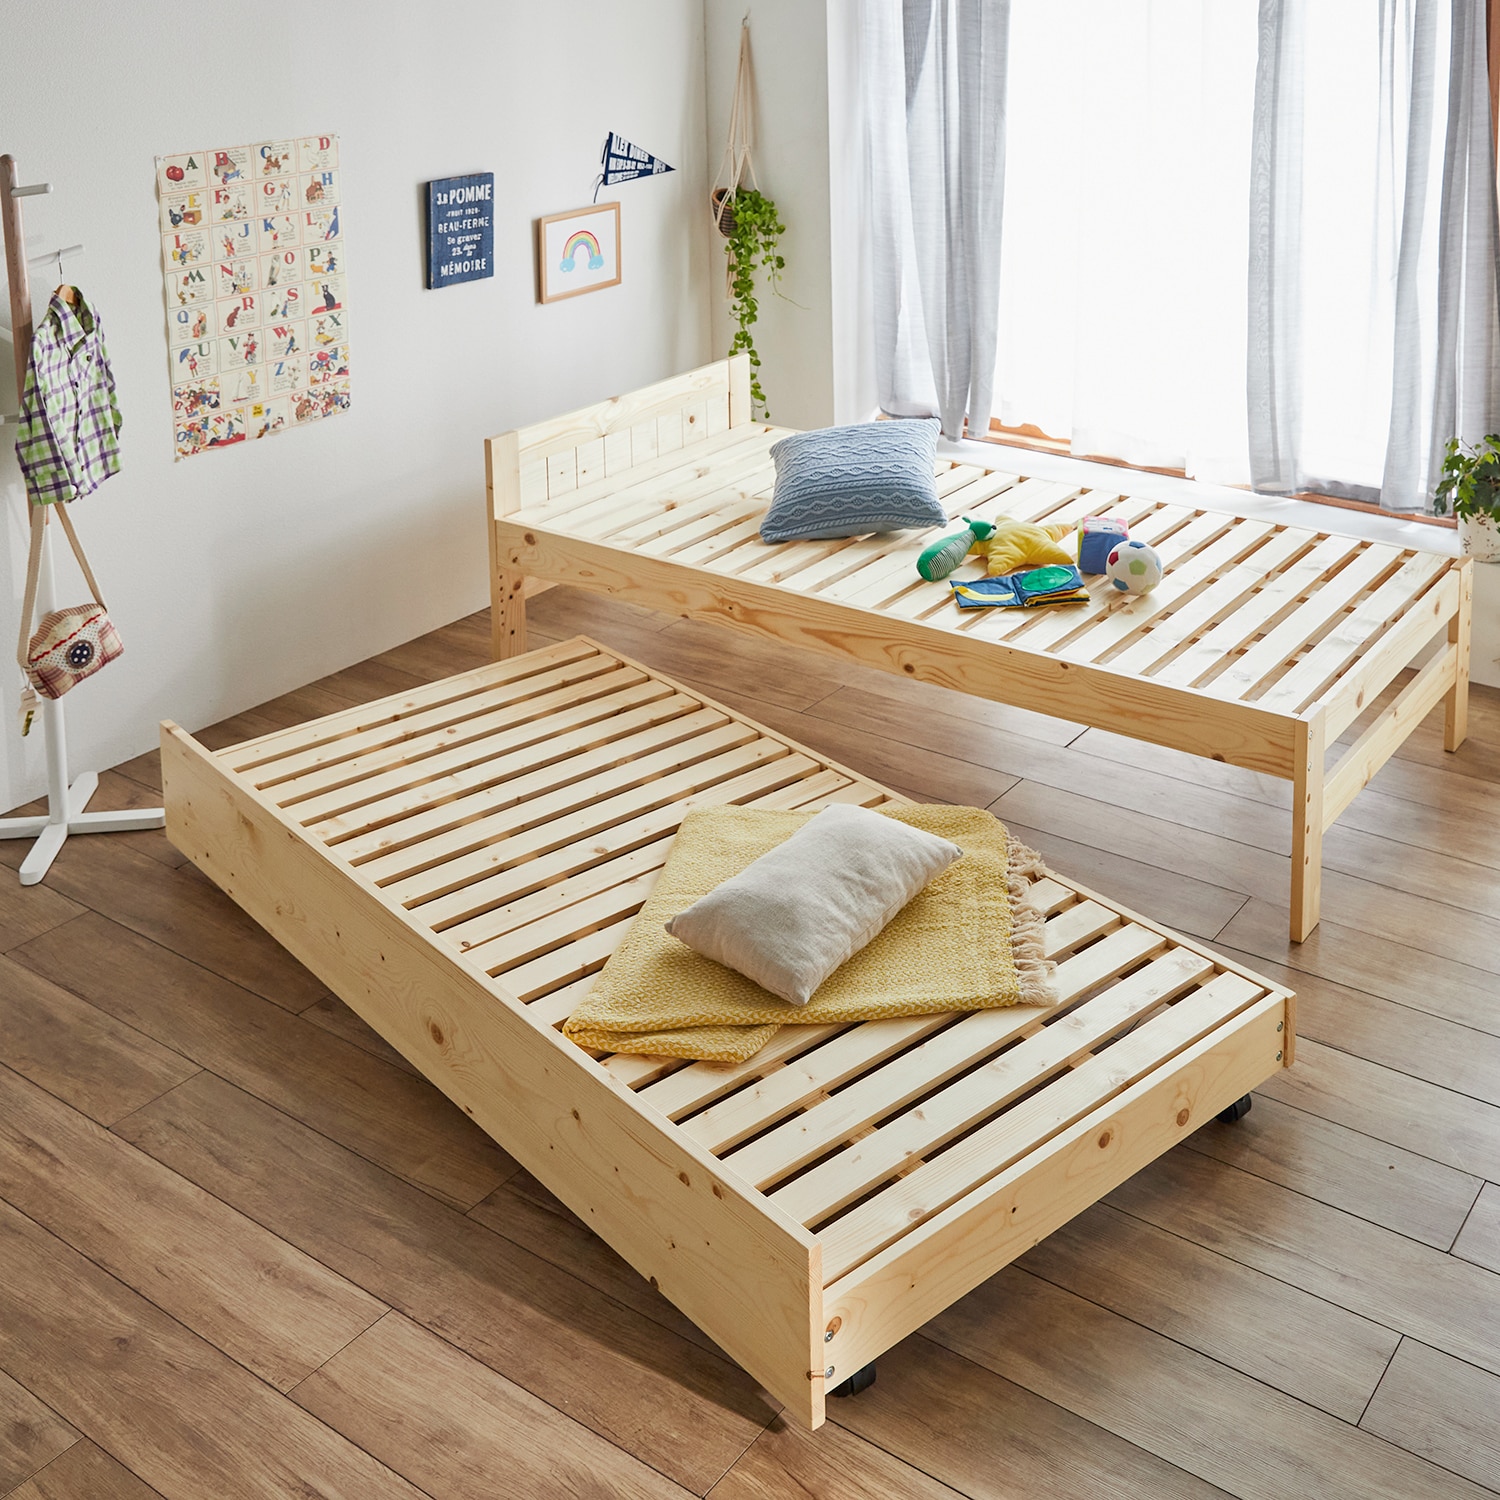 【11月8日まで大型商品送料無料】 天然木パイン材の組み合わせて使える親子ベッド